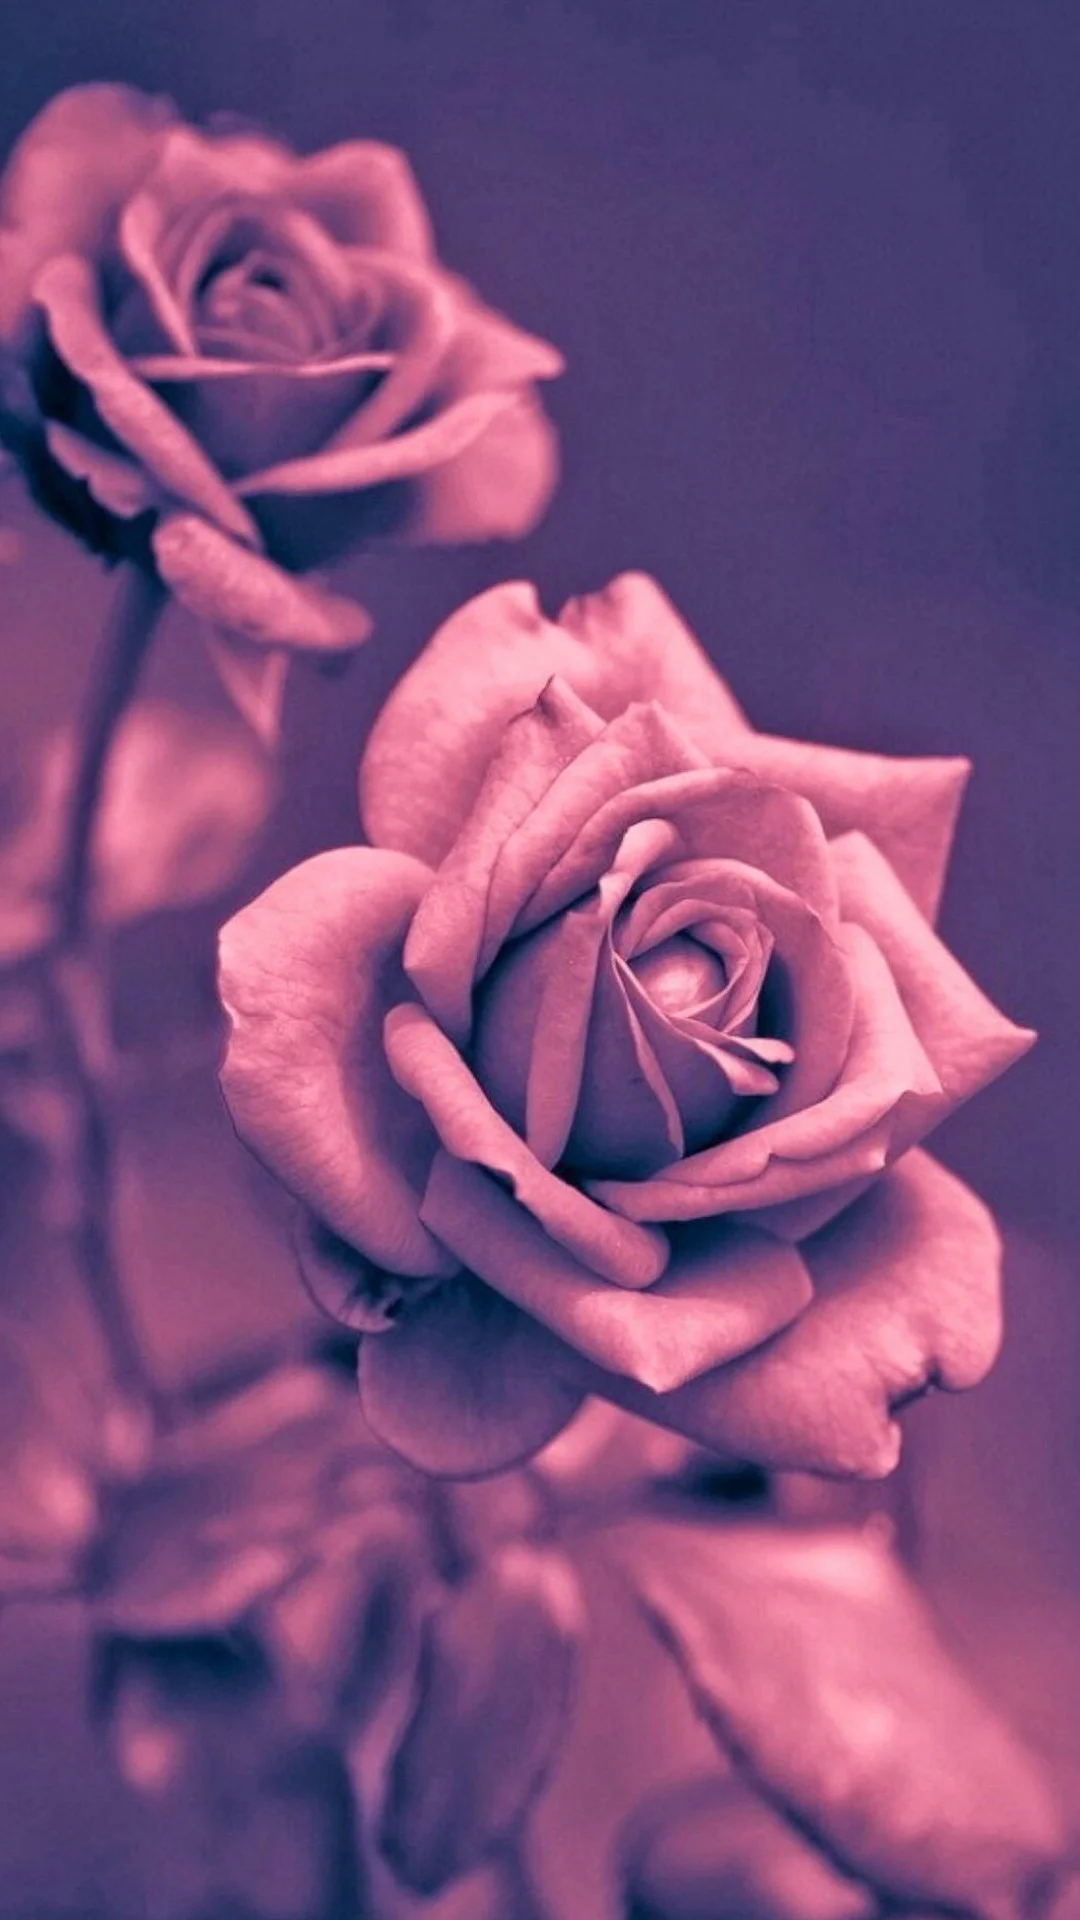 Beautiful Pink Rose Closeup iPhone 6 Wallpaper Download